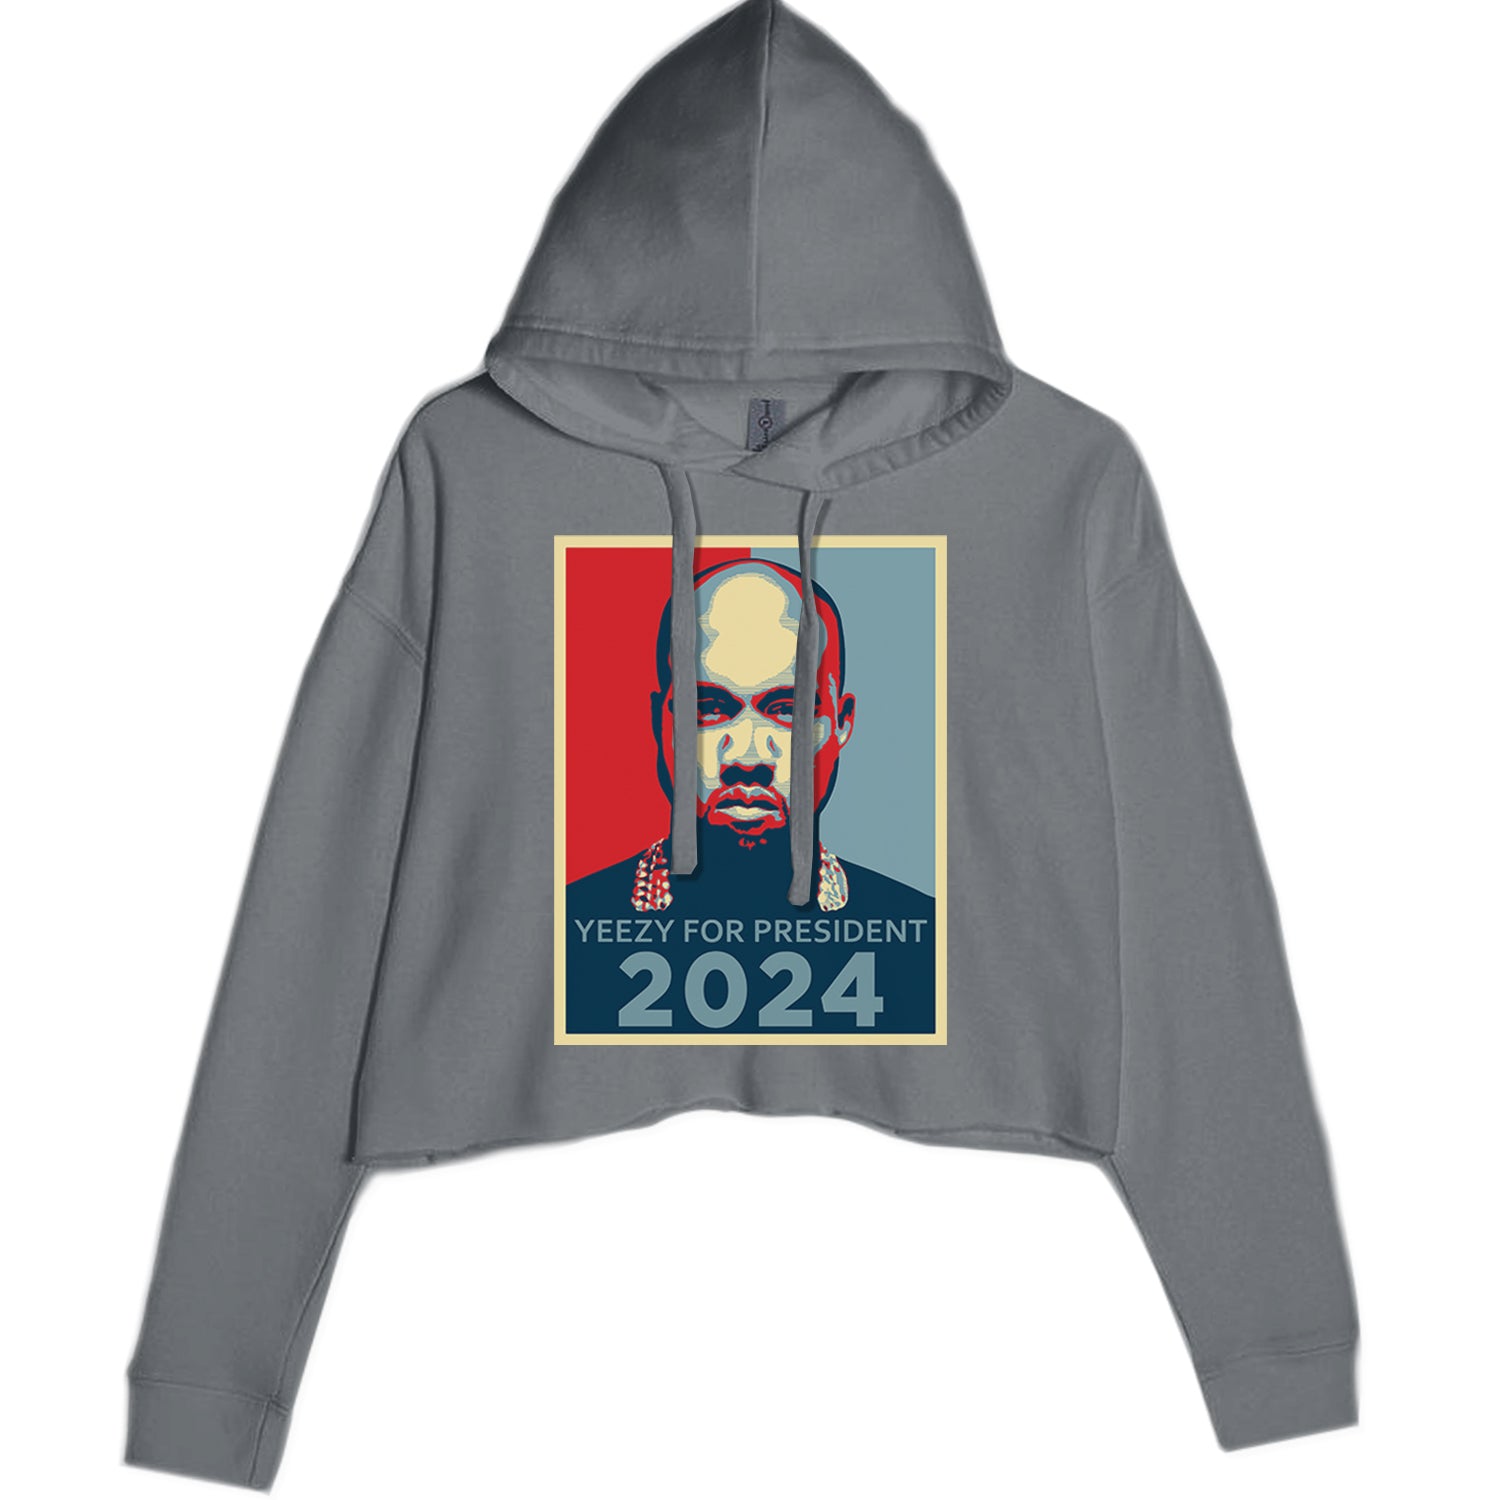 Yeezus For President Vote for Ye Values! Sweatshirt Charcoal Grey